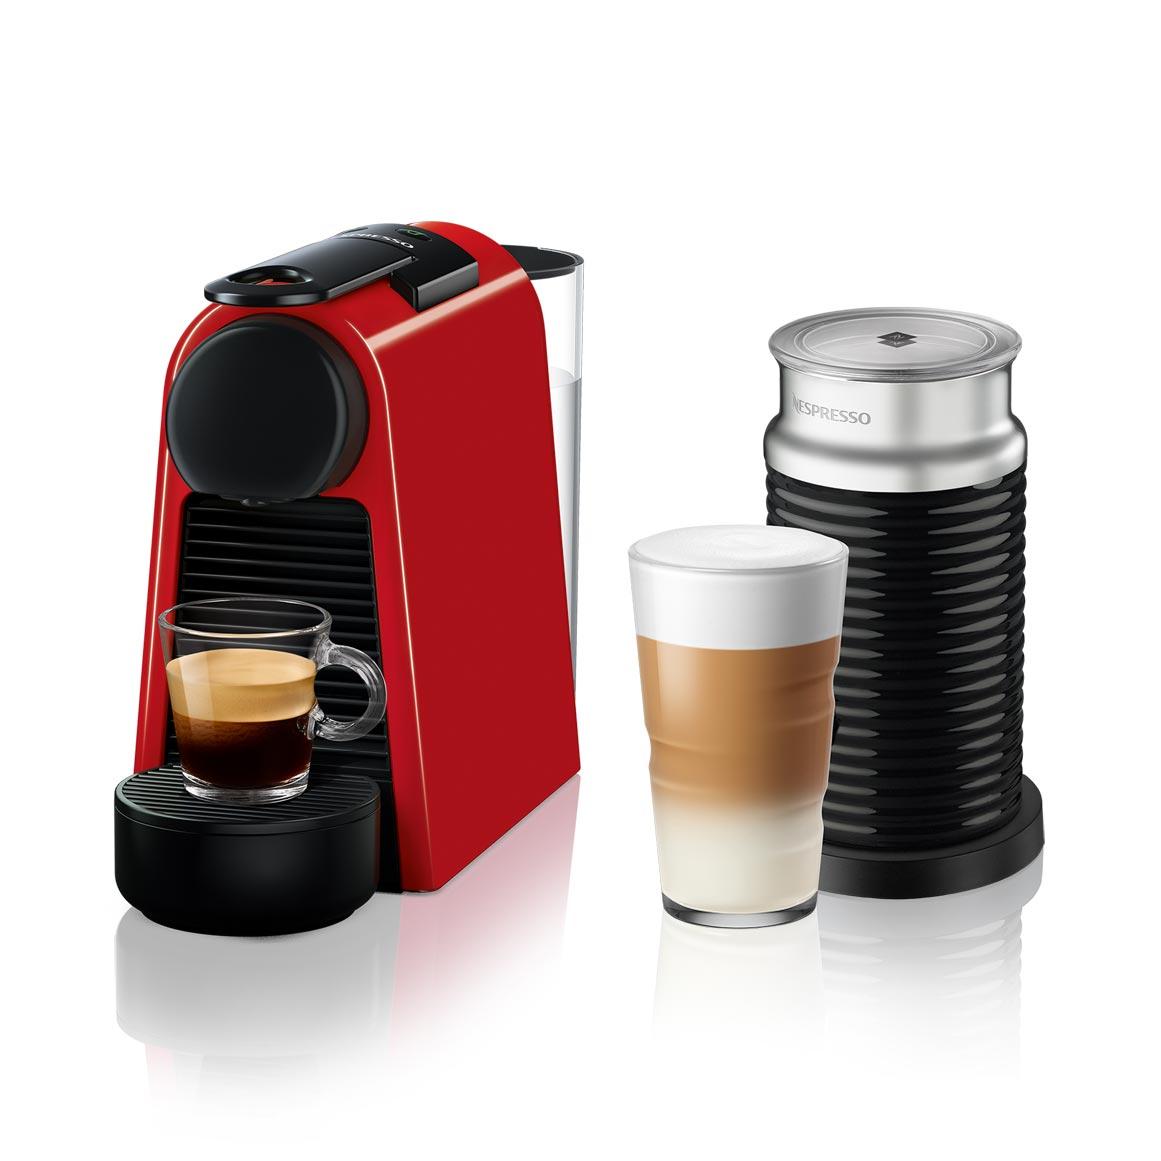 Comparaison entre l'Aeroccino Nespresso 3 et le 4 : les différences